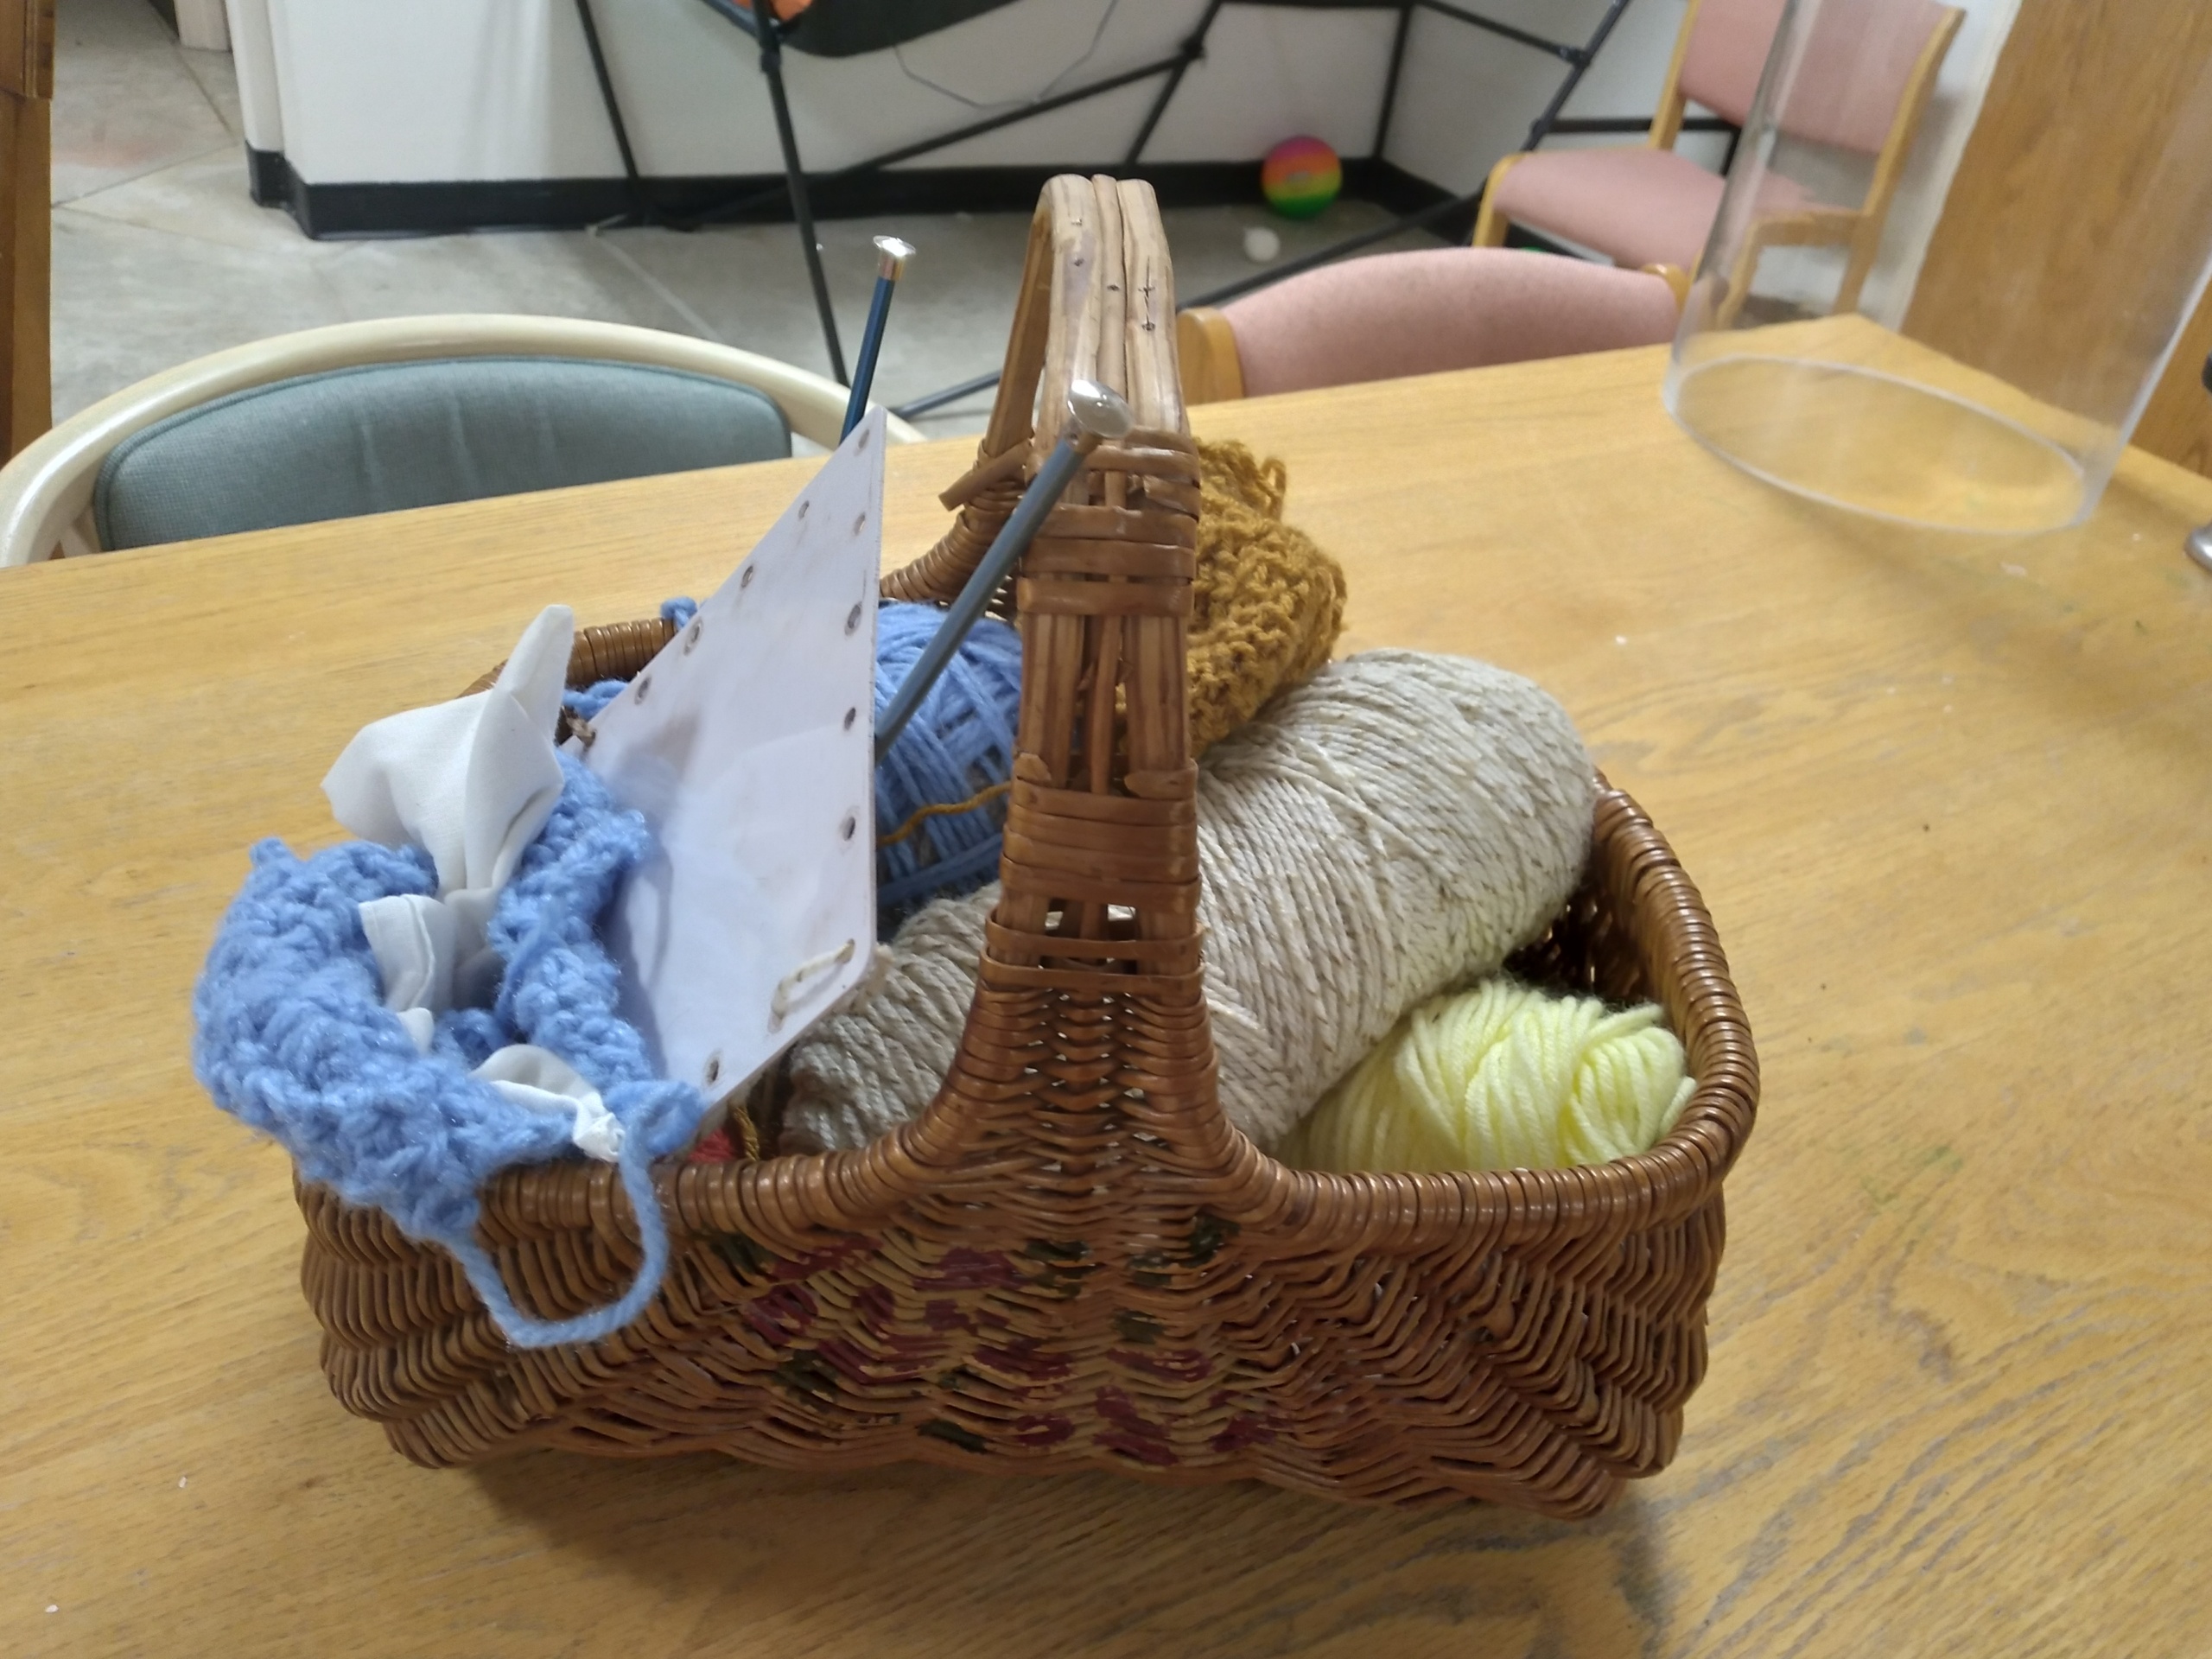 Sewing/knitting basket